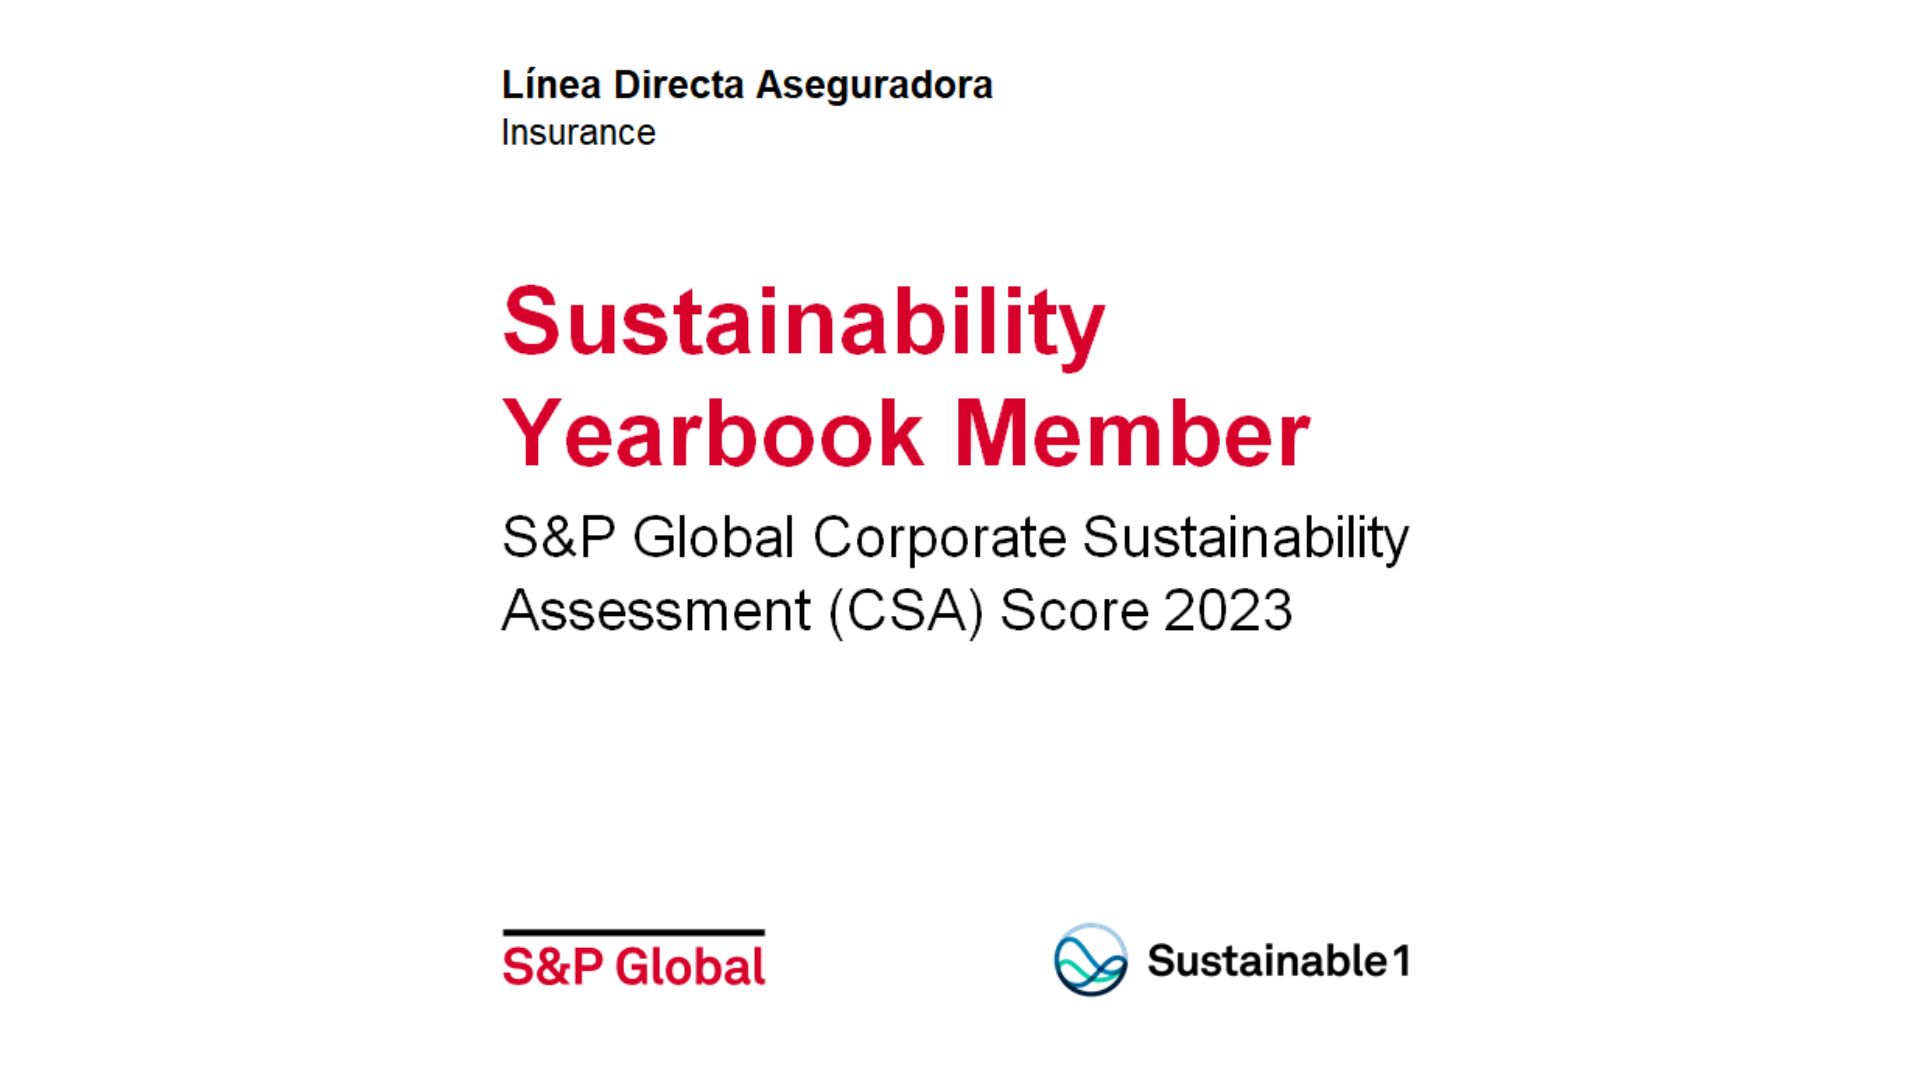 Certificado que se le da a las compañías que entran dentro del S&P Global Sustainability Yearbook